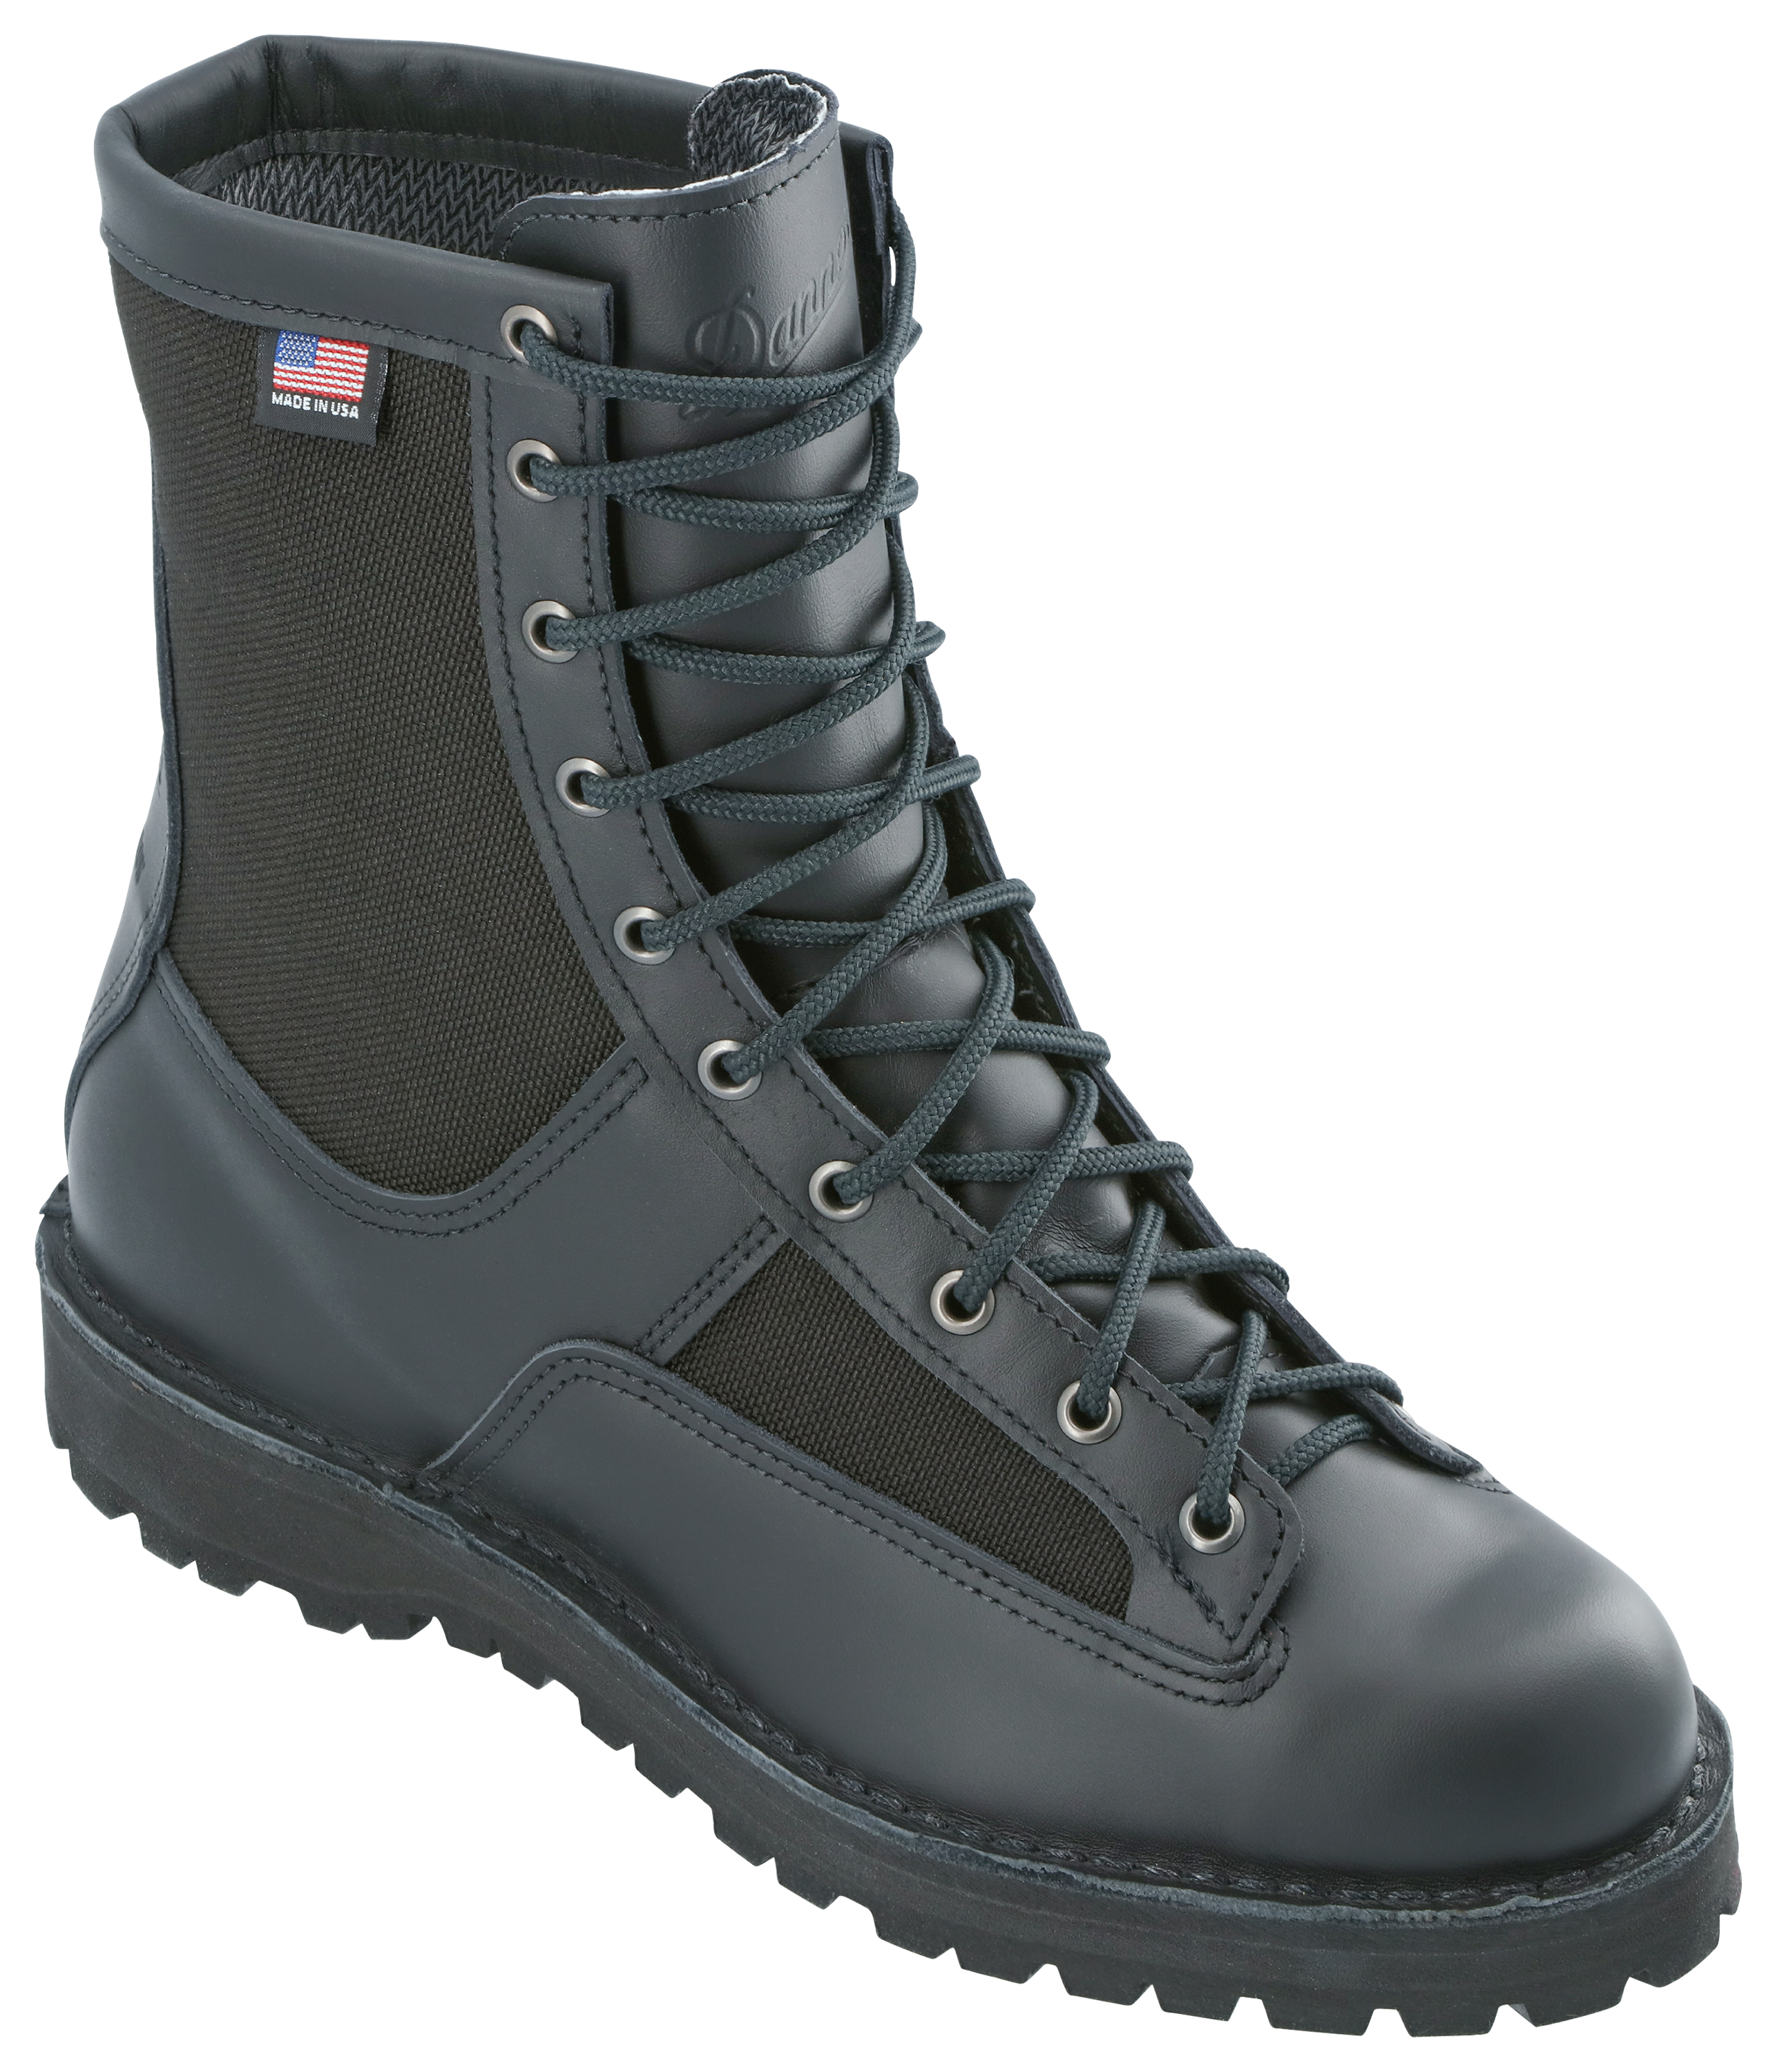 Danner Acadia GORE-TEX Duty Boots for Men - Black - 10.5XW